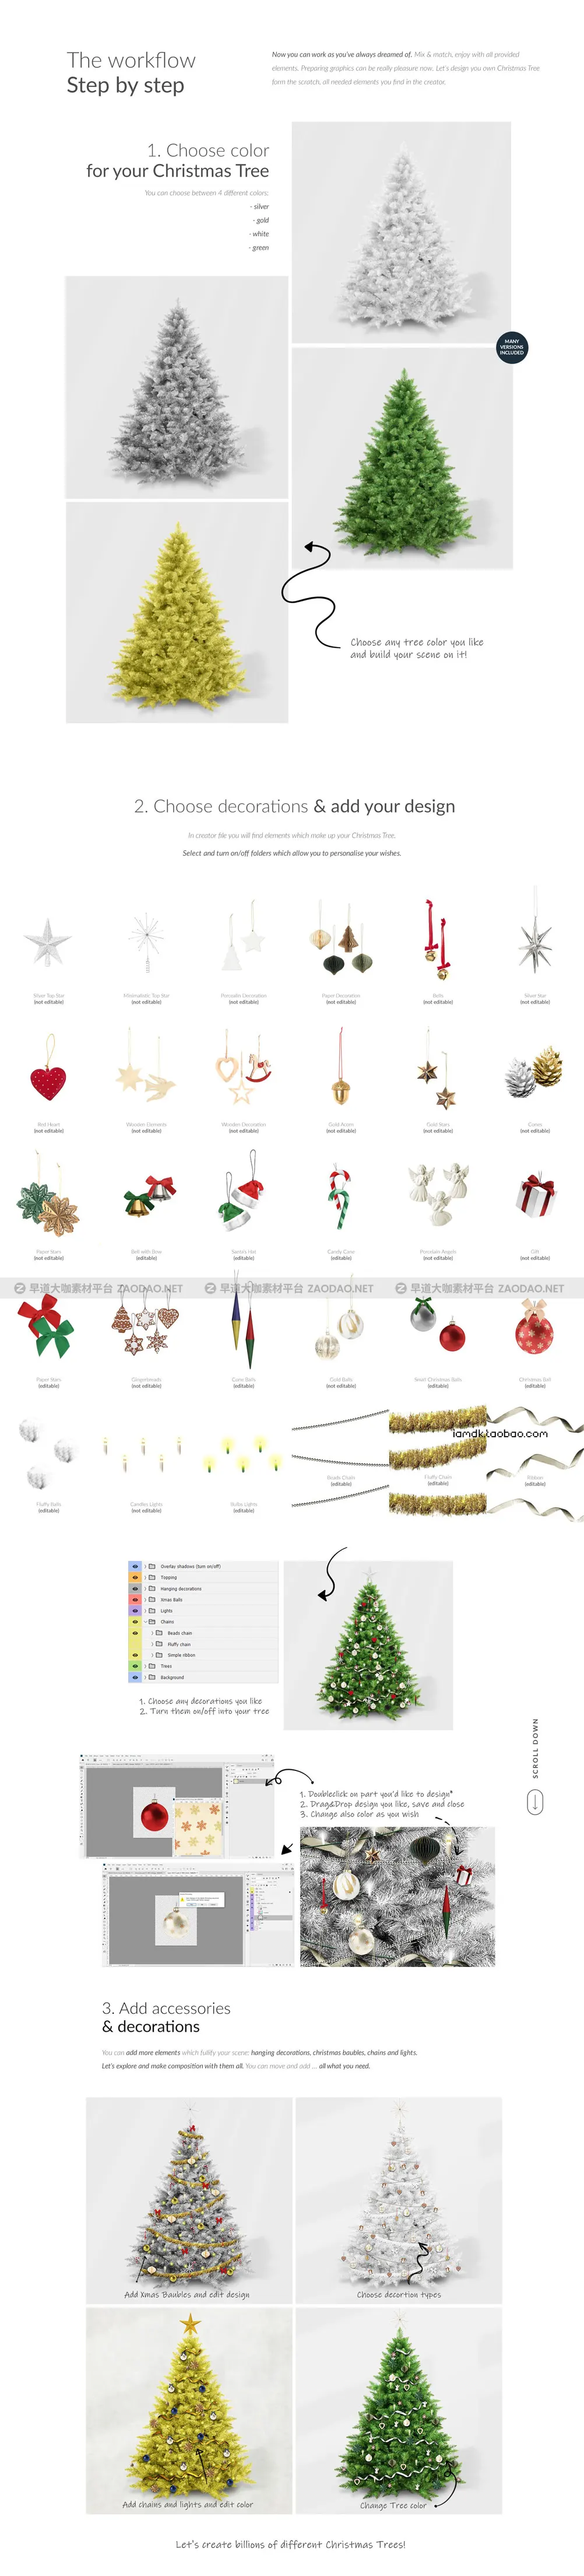 自定义圣诞节新年装饰圣诞树节日礼物Ps样机设计素材展示效果模板 Tree Creator Mock-up插图4